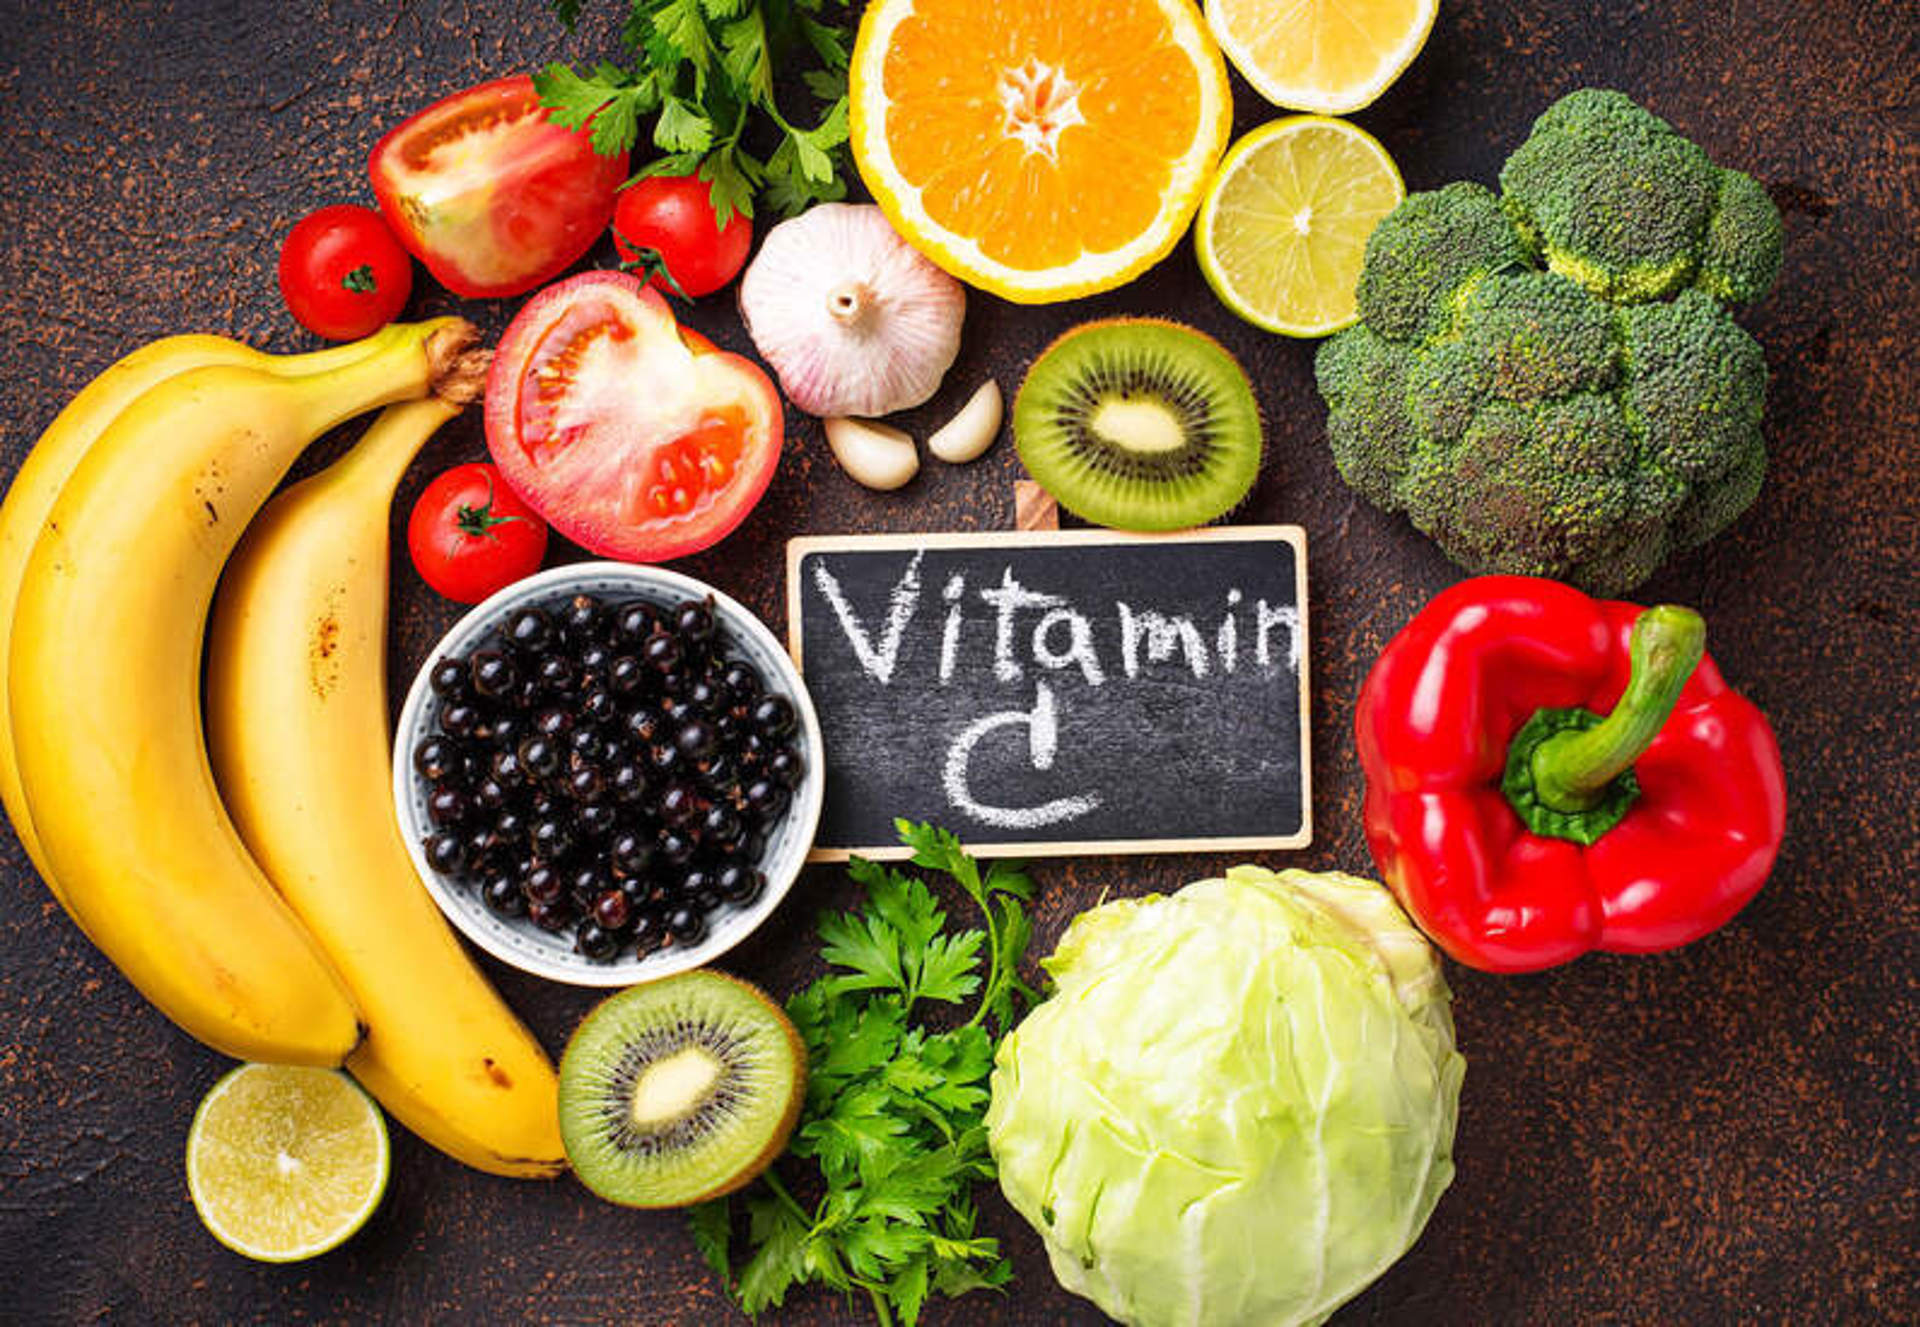 C vitamini eksikliği hangi hastalıklara yol açar?